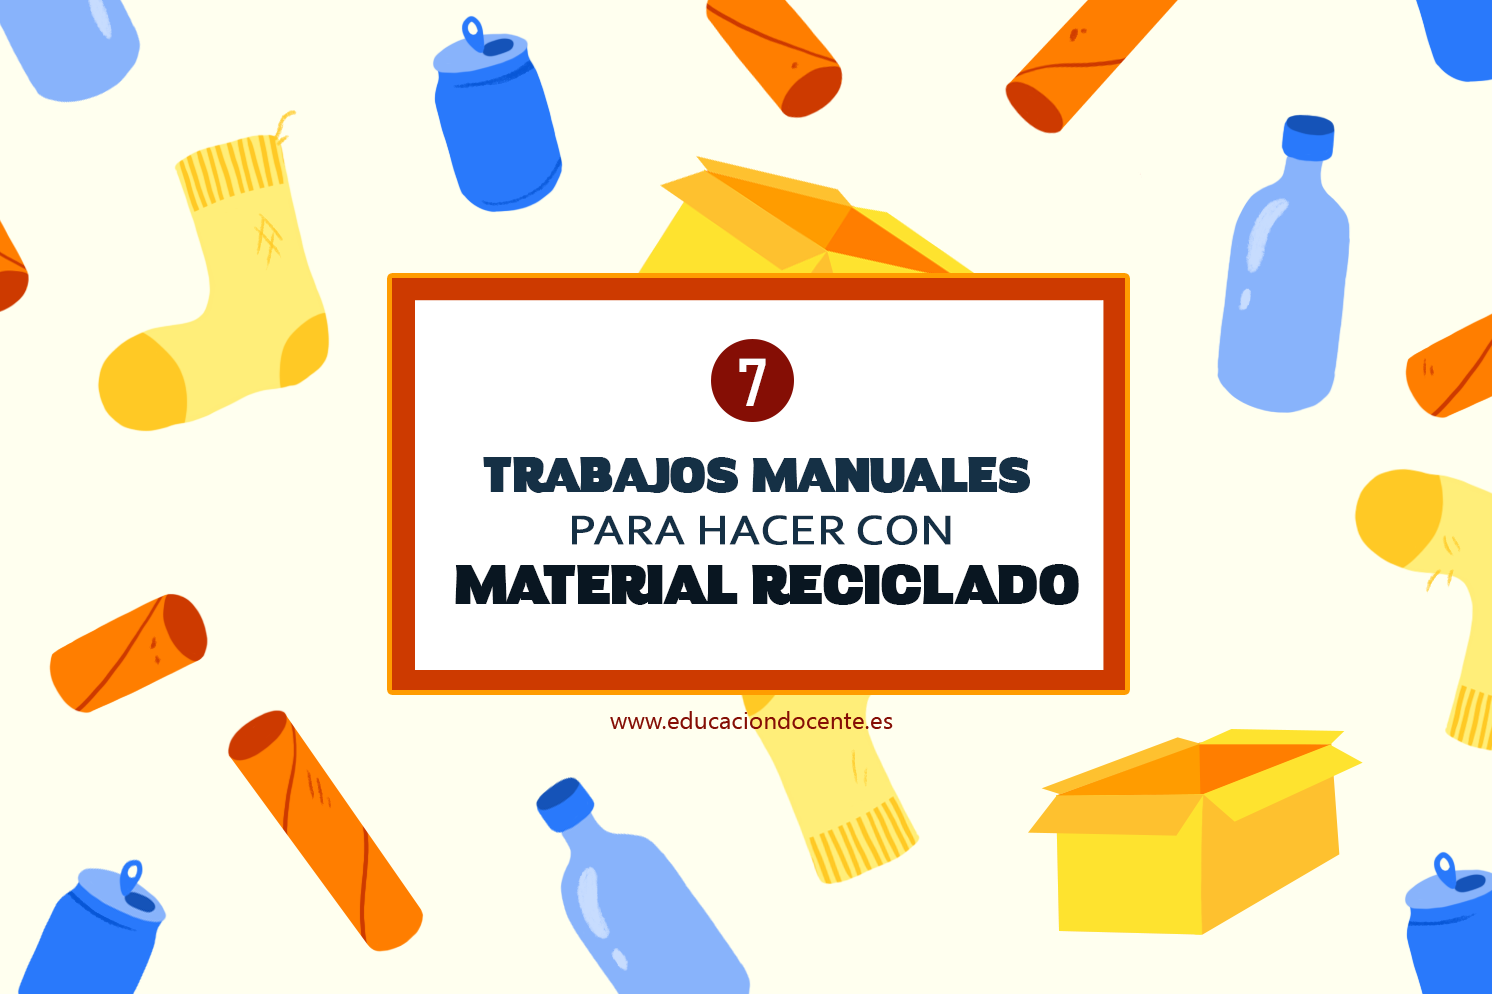 https://educaciondocente.es/blog/wp-content/uploads/2016/07/ED-material-reciclado-46-2.png